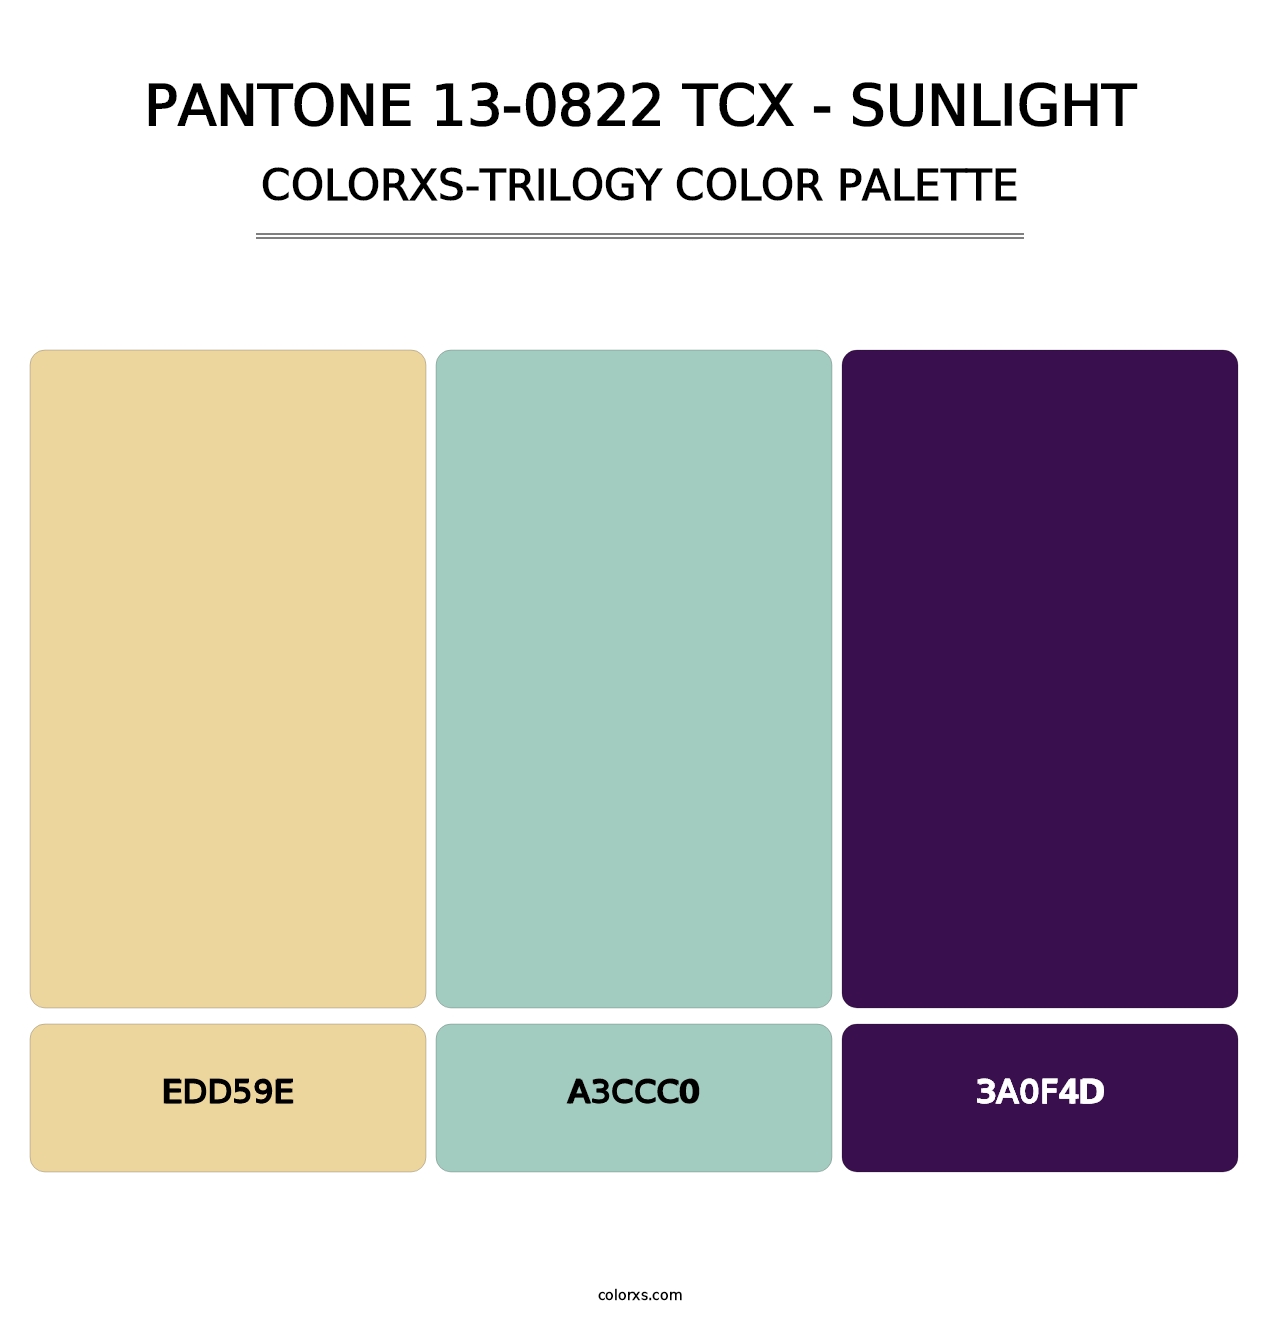 PANTONE 13-0822 TCX - Sunlight - Colorxs Trilogy Palette